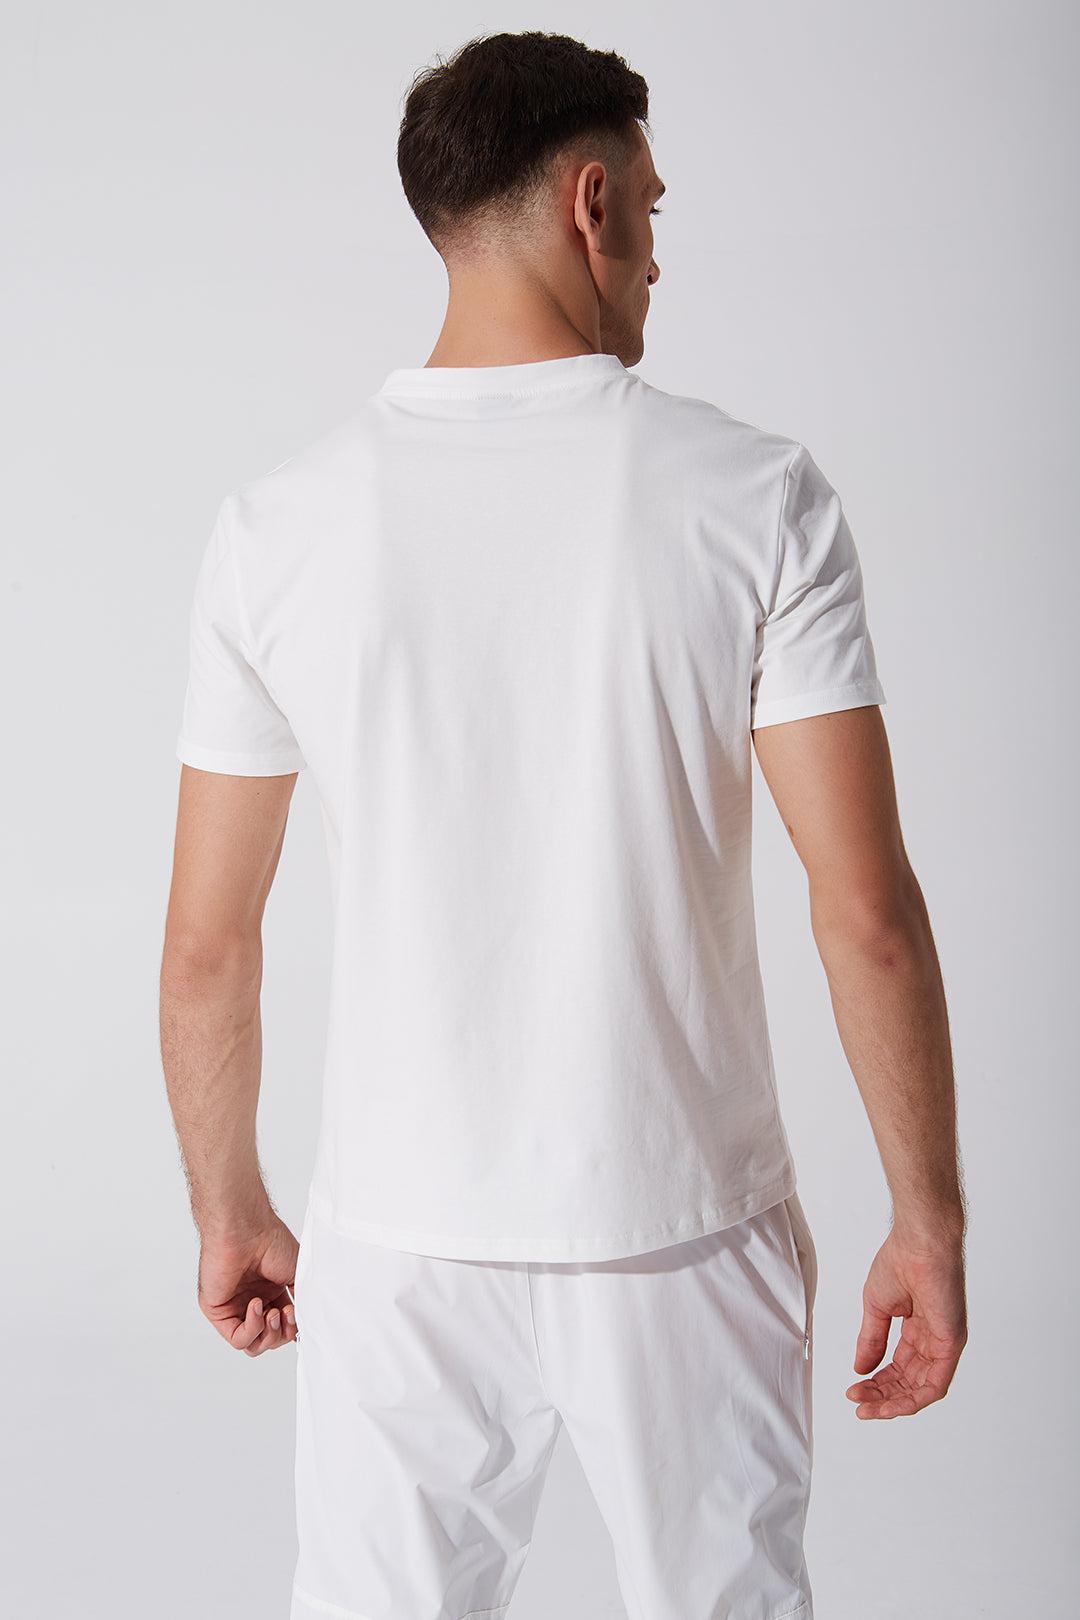 Unisex white short sleeve tee for men - OW-0176-MSS-WT - 4.jpg